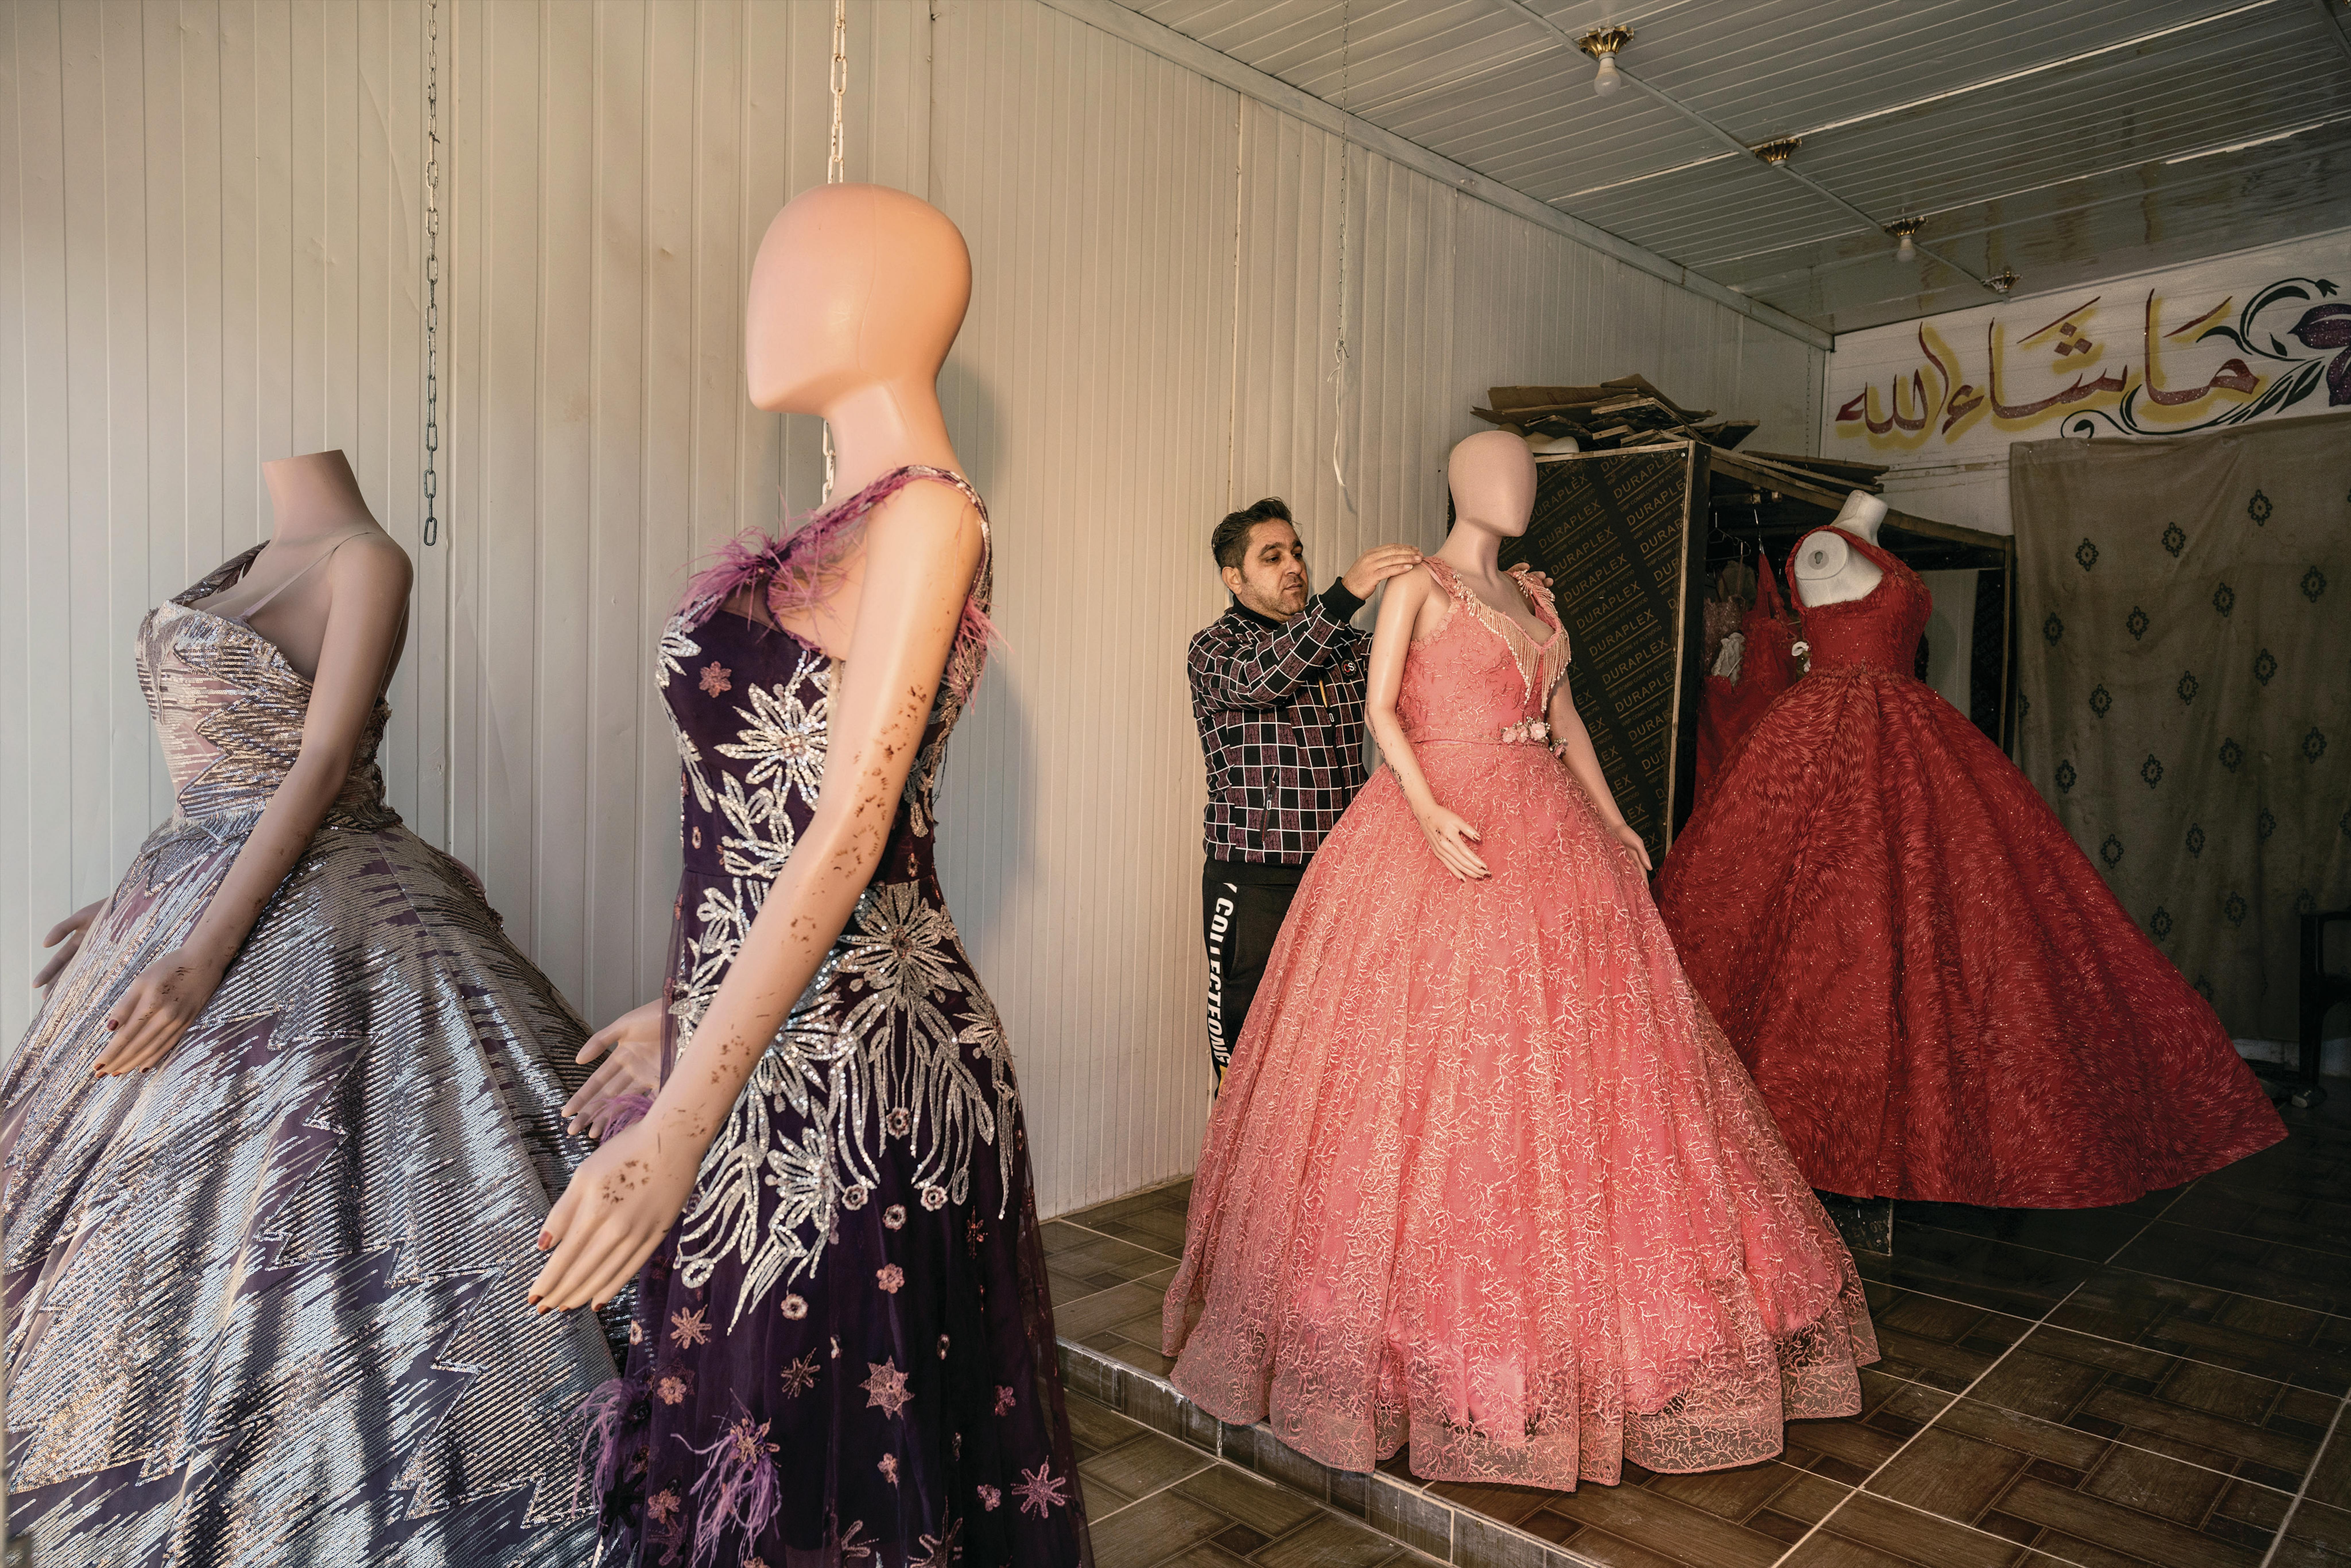 Un negozio di abiti da sposa e cerimonia lungo gli Champs Élyséees, soprannome della via commerciale lunga più di un chilometro che si è formata spontaneamente negli anni, nel campo profughi di Zaatari.